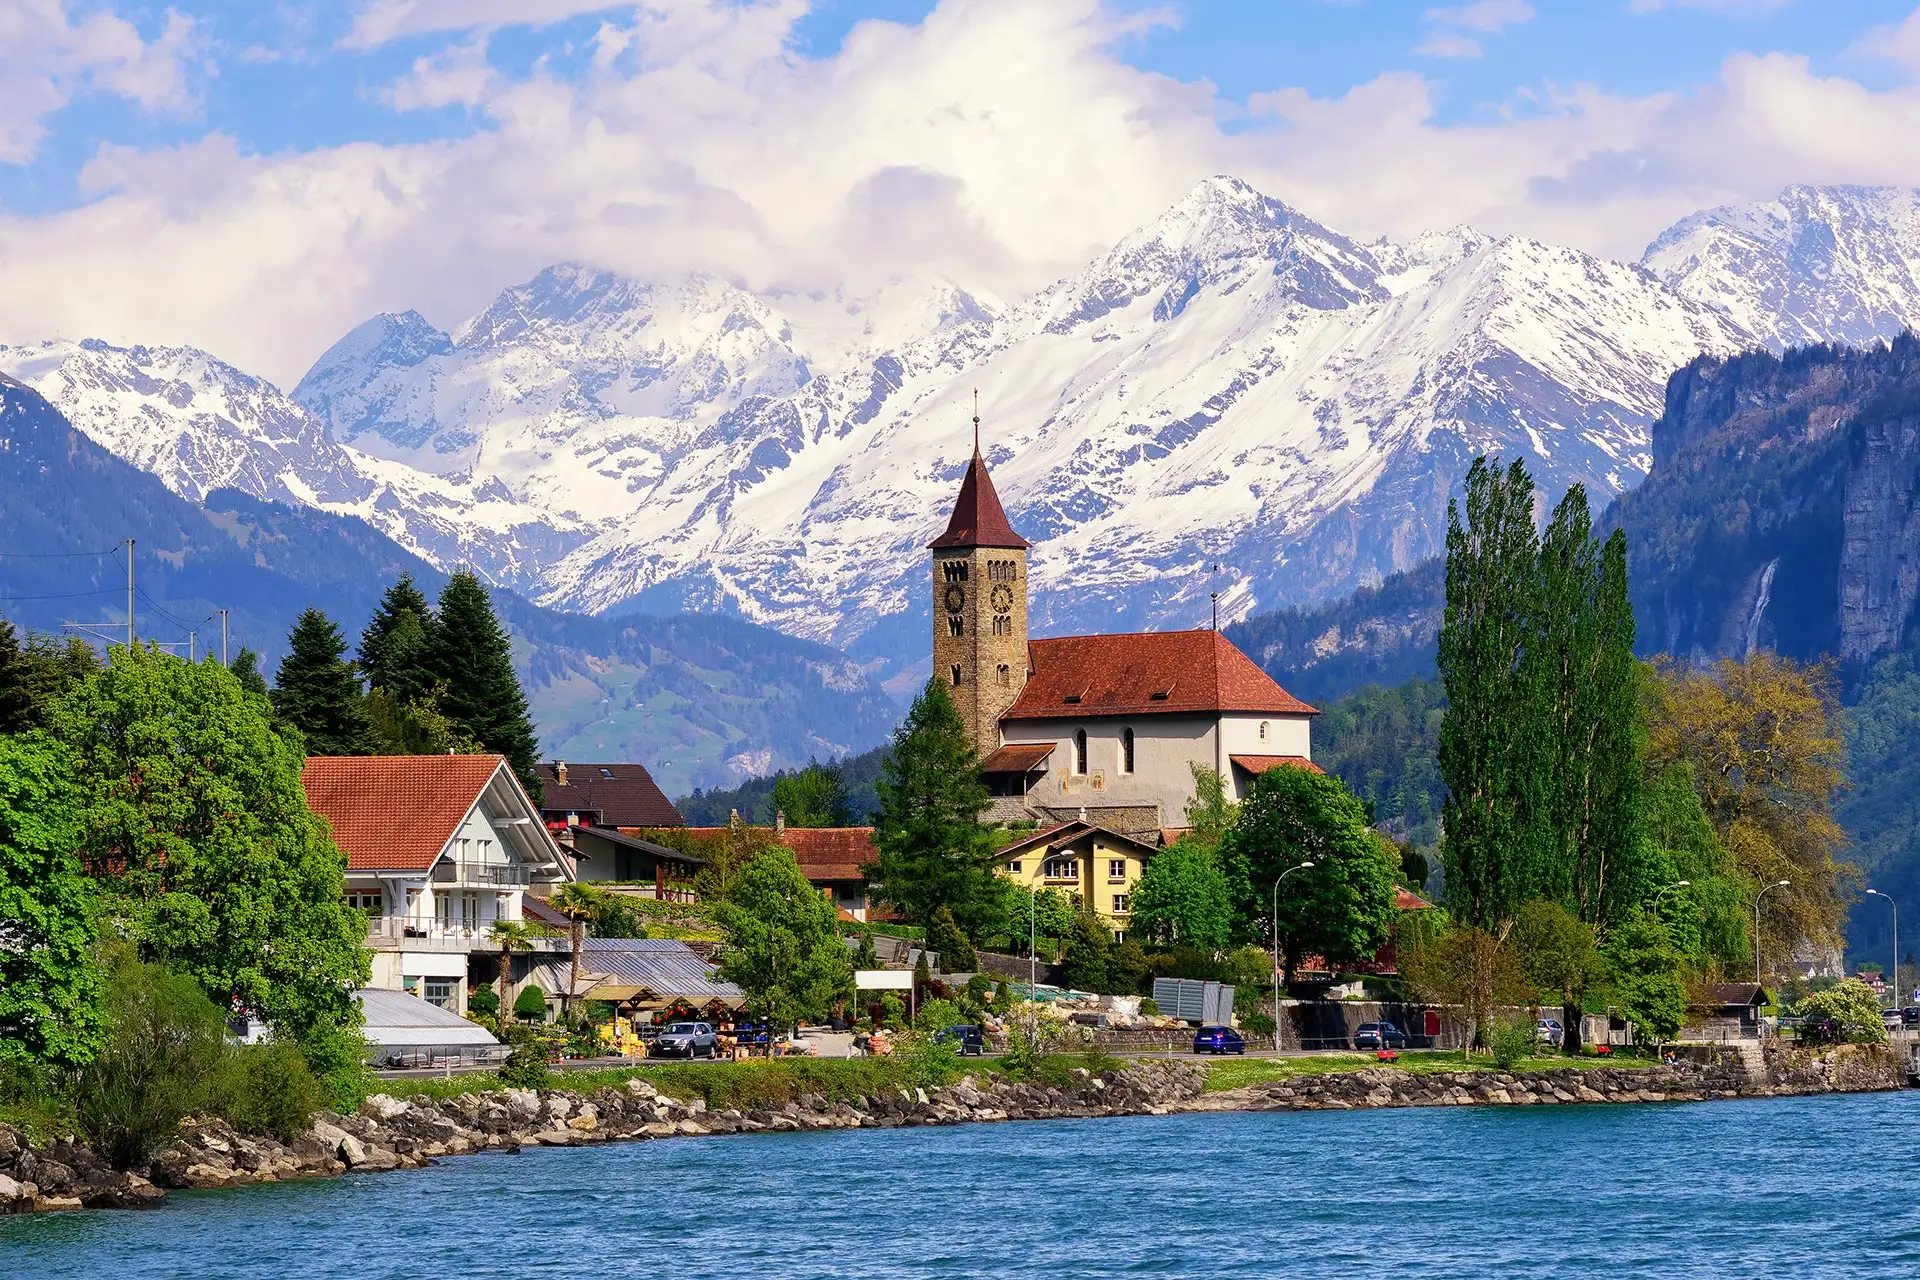 Lake Brienz by Interlaken, Switzerland